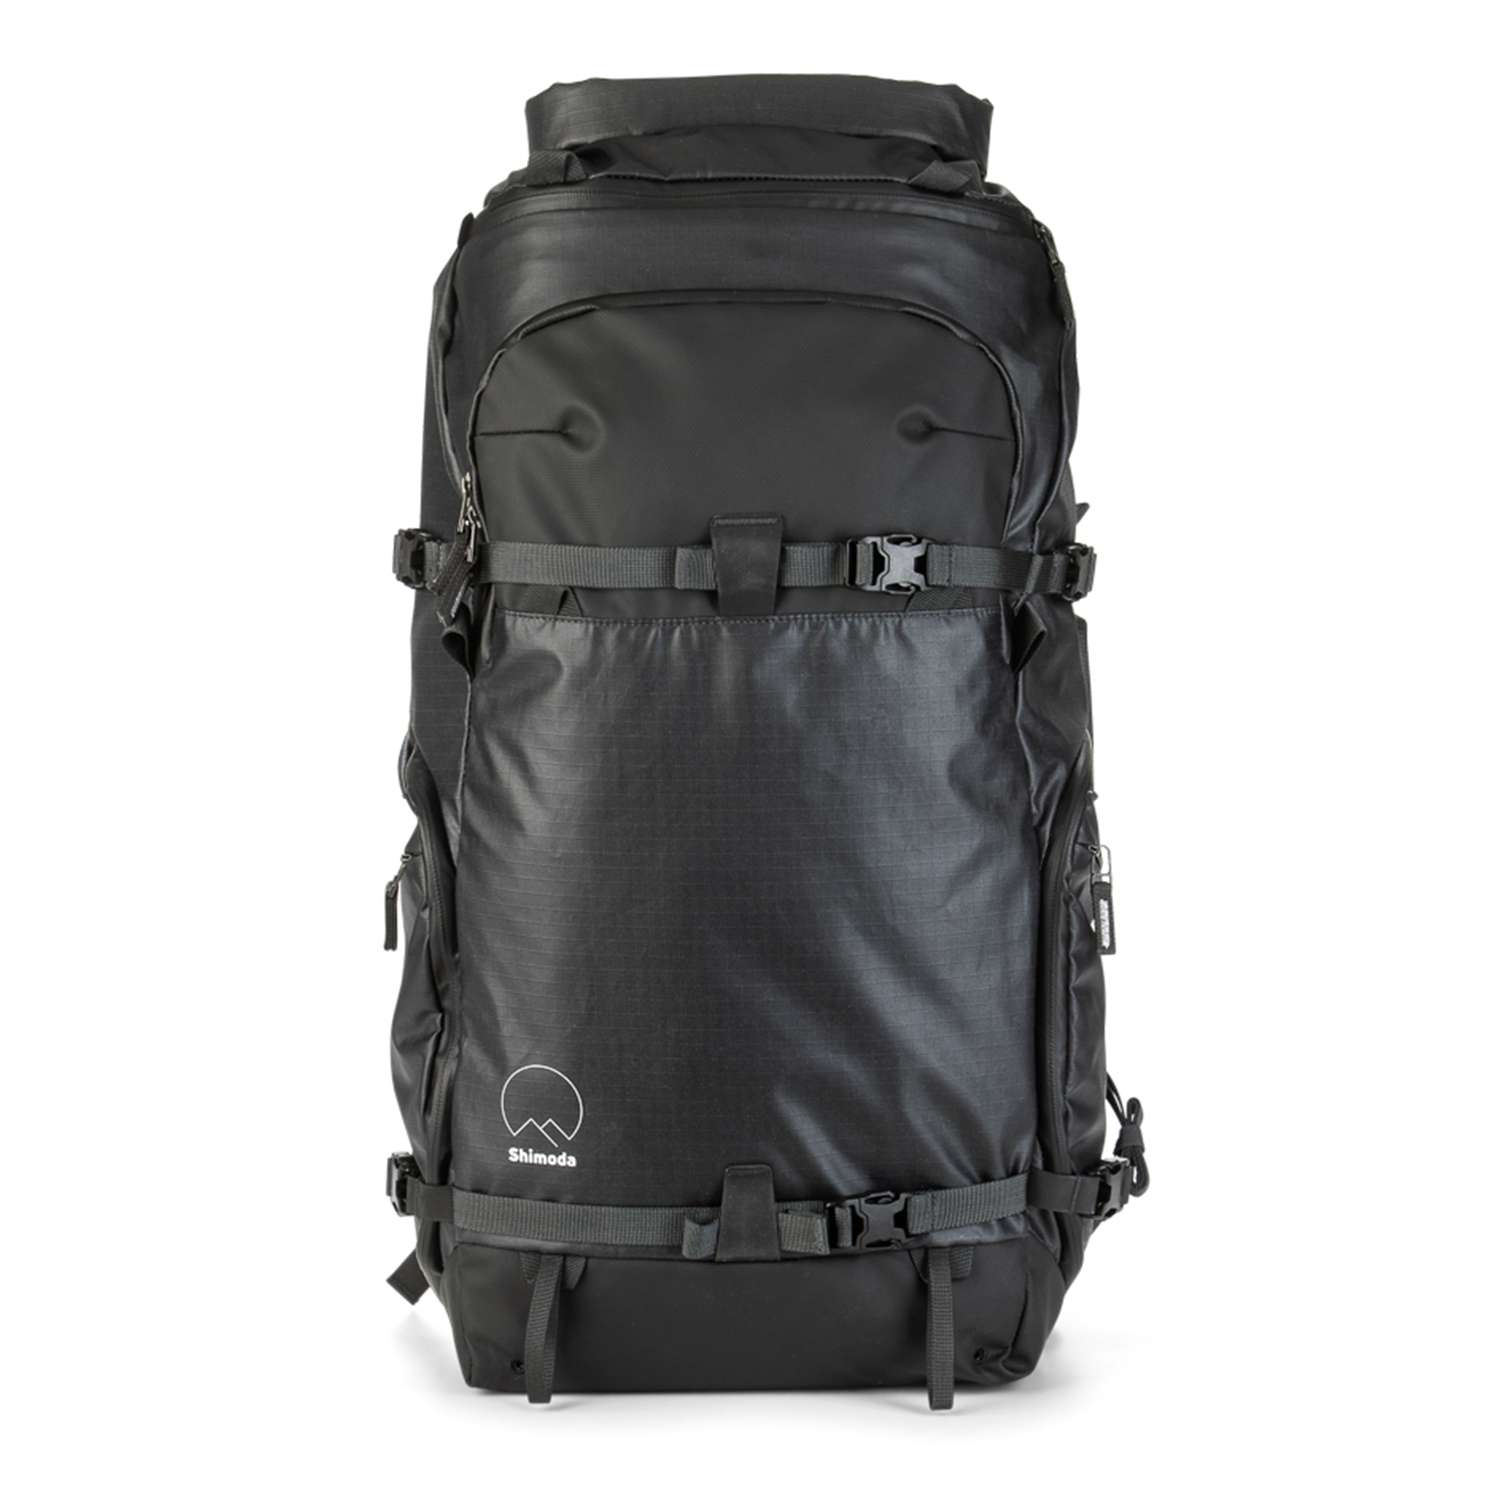 Shimoda Action X50 Starter Kit Backpack